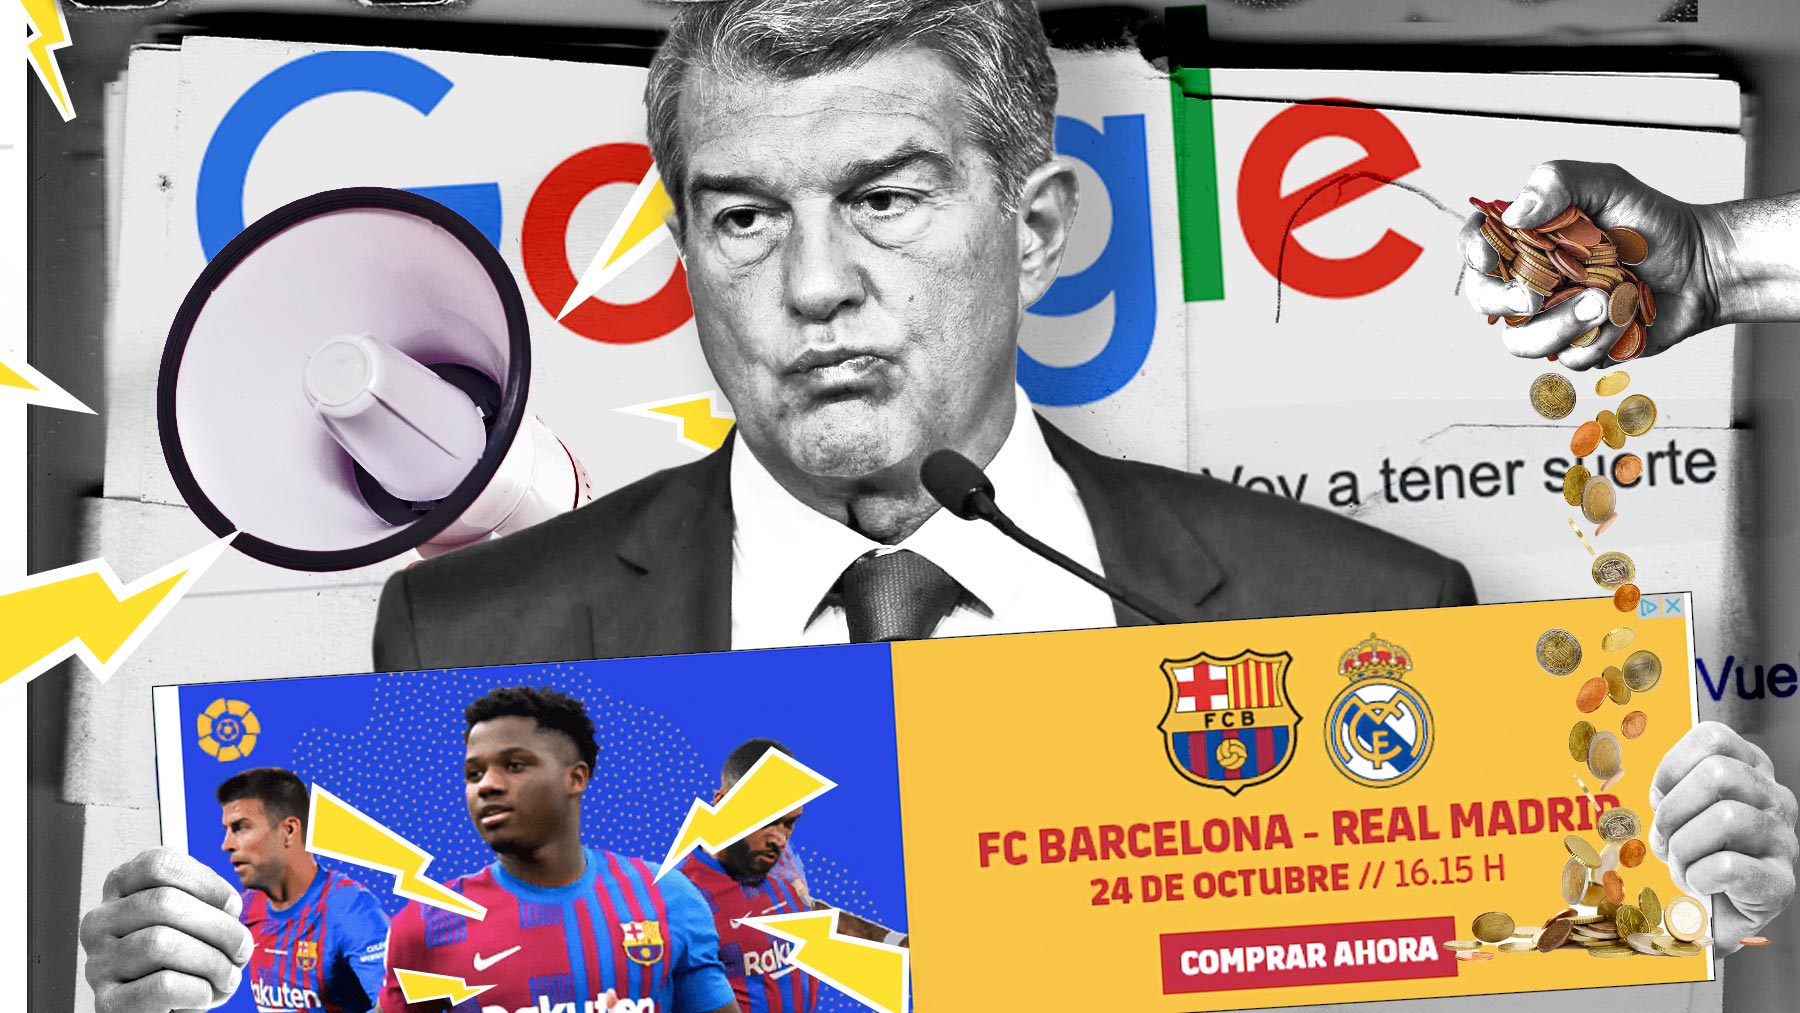 El Barça promociona las entradas del Clásico en Google por miedo a una imagen ridícula